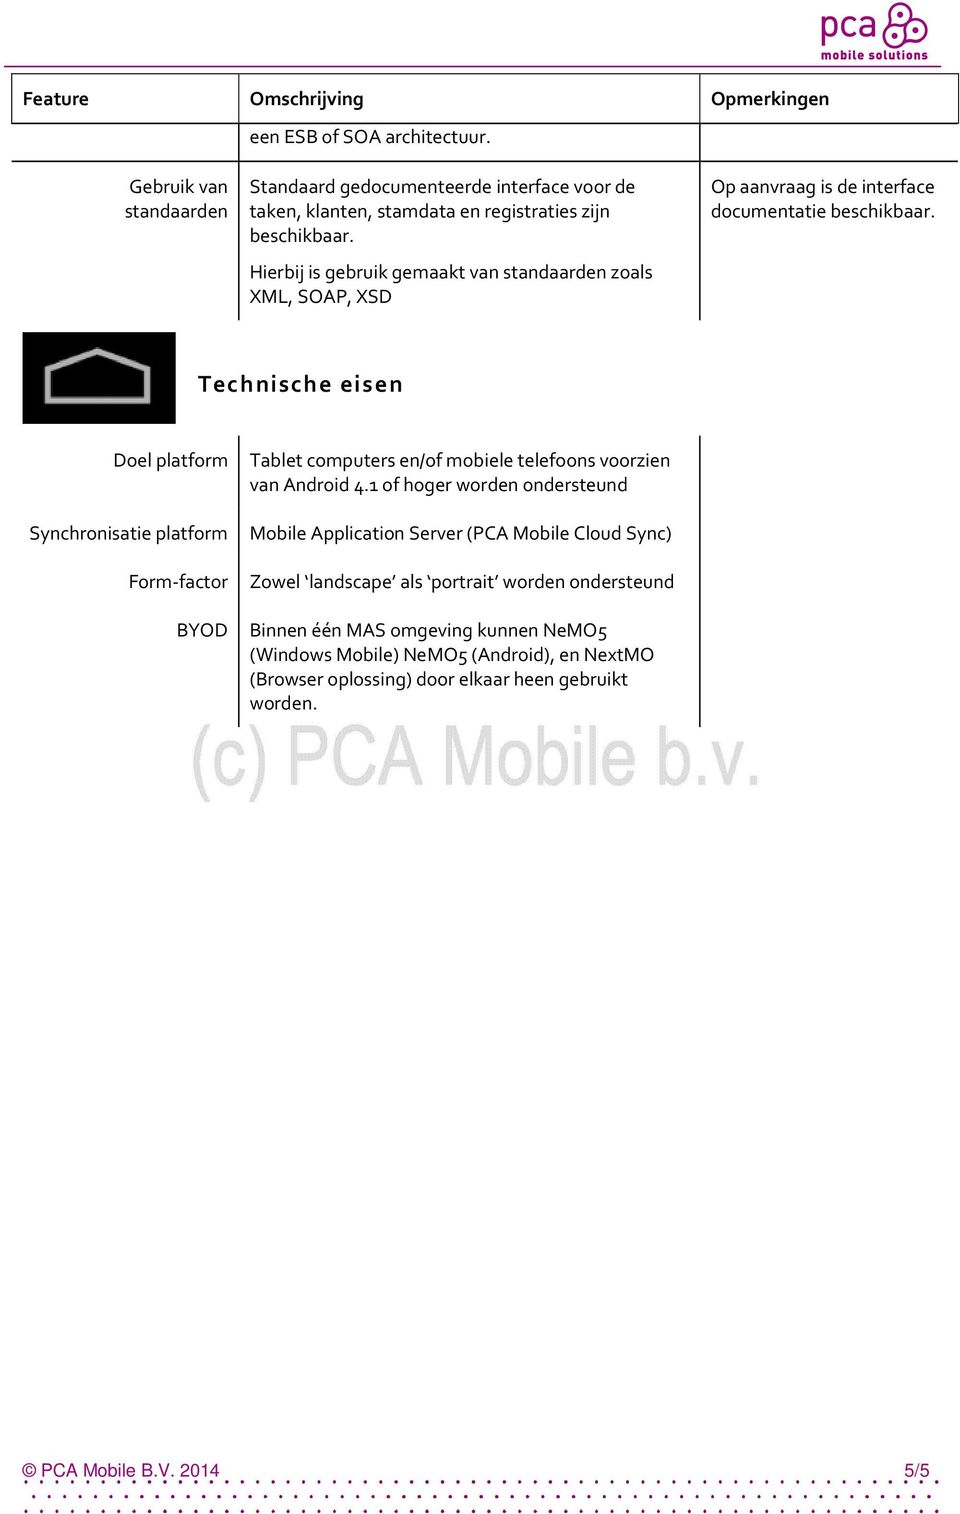 Technische eisen Doel platform Tablet computers en/of mobiele telefoons voorzien van Android 4.